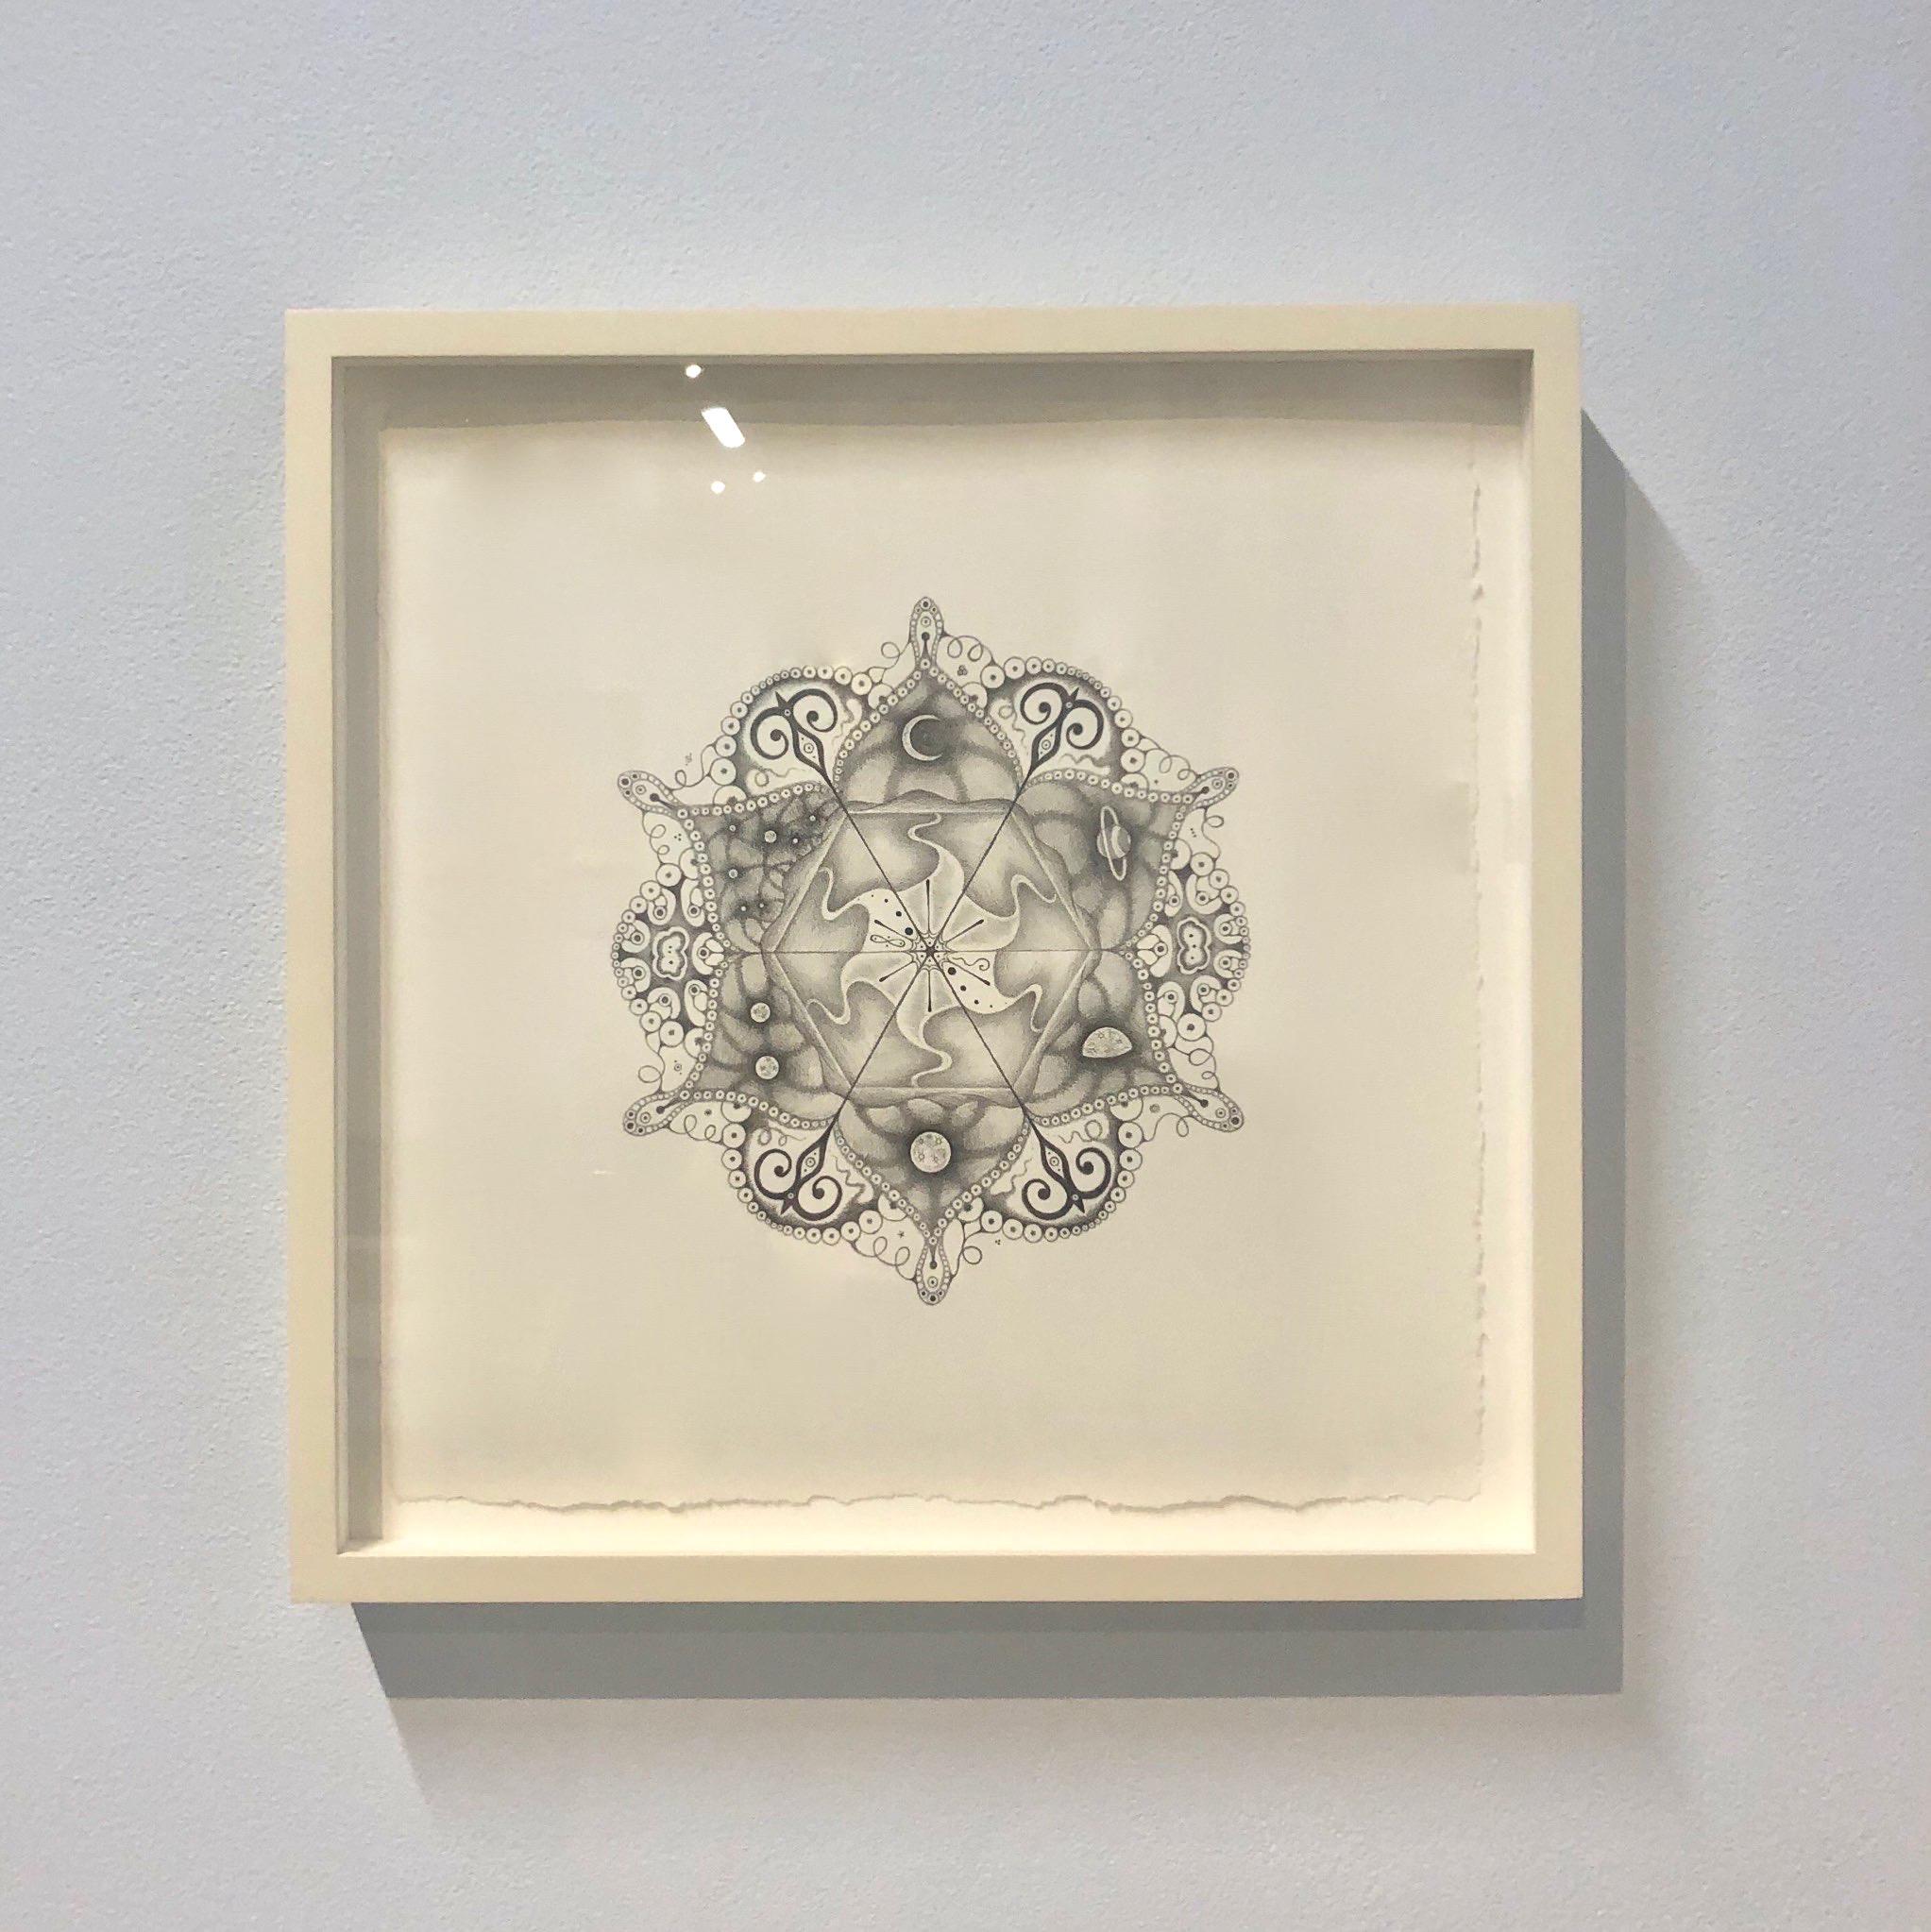 Snowflakes 108 Matrix, Planet and Crescent Moon Mandala Pencil Drawing - Art by Michiyo Ihara